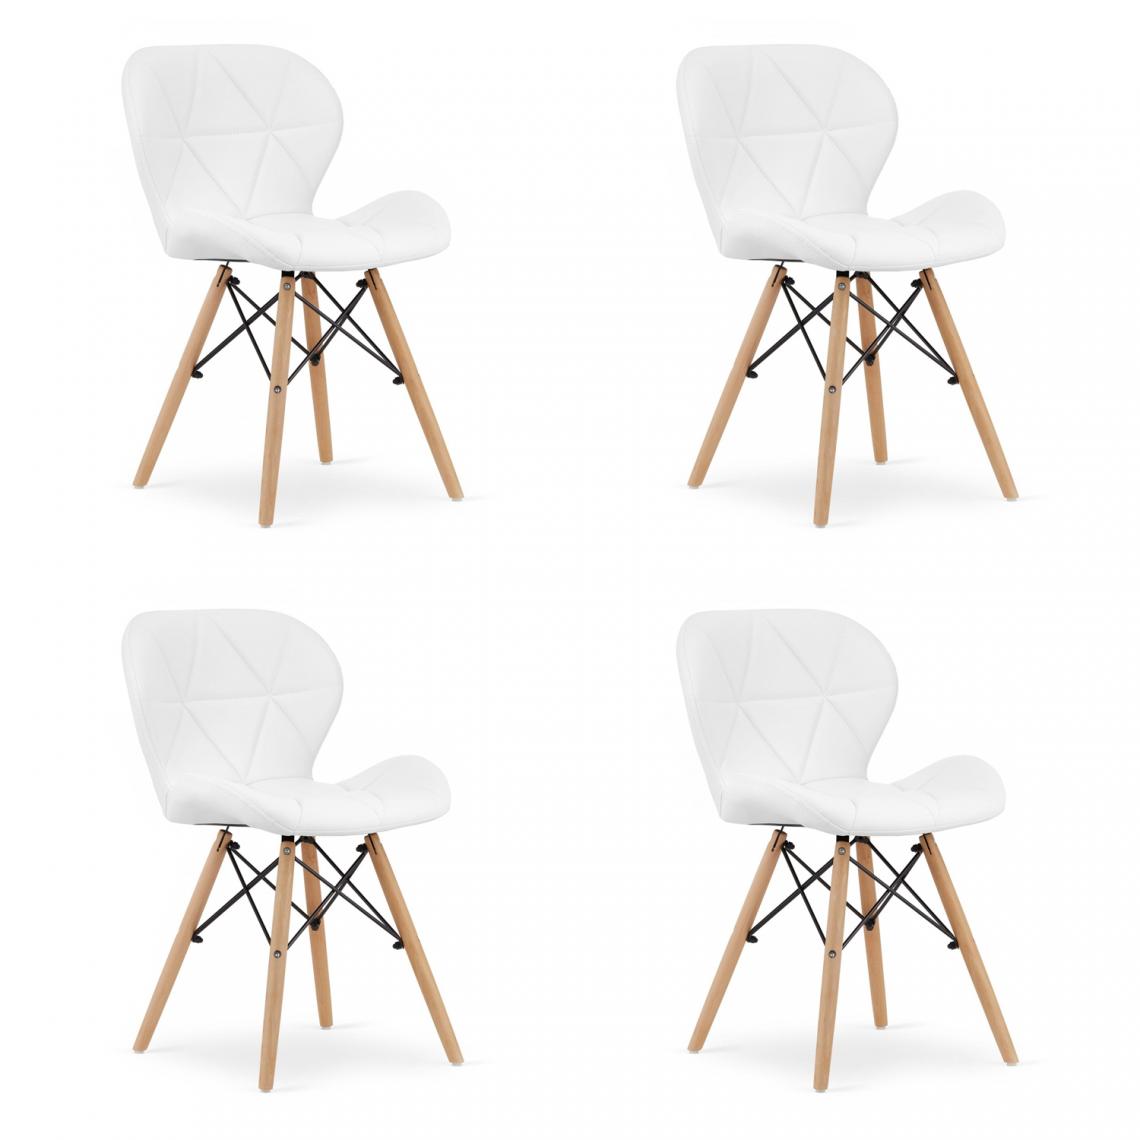 Hucoco - LAGOSK - Lot de 4 chaises similicuir style glamour salon/salle à manger - 73x47x38 cm - Chaise de salle à manger - Blanc - Chaises